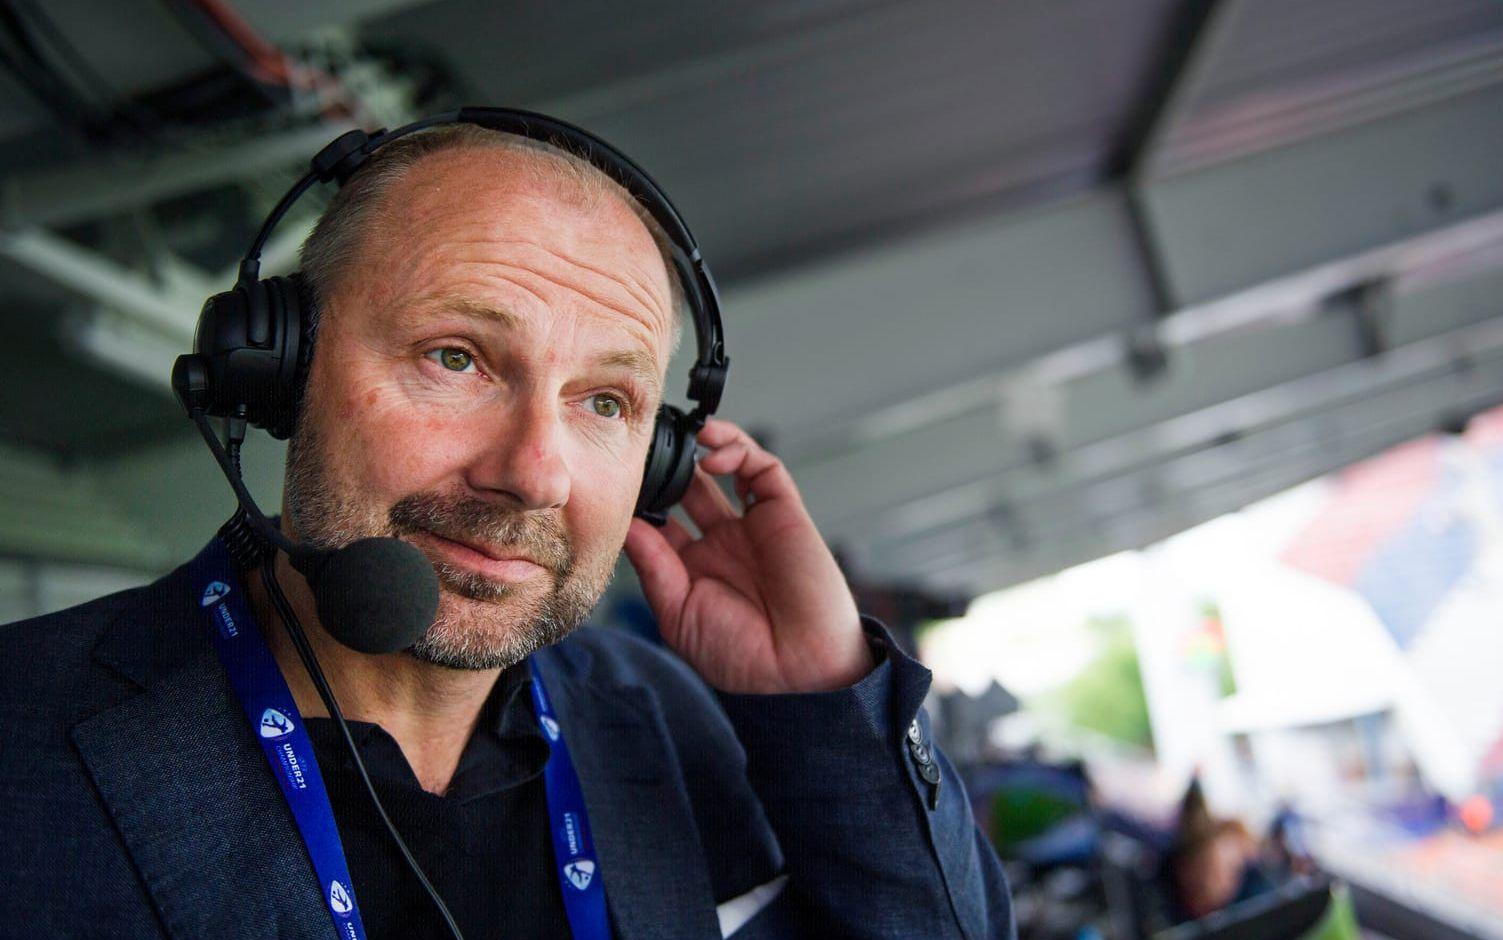 I dag hörs Mild som expertkommentator för Radiosporten. Innan dess var han under flera år sportchef i IFK Göteborg. Foto: Bildbyrån